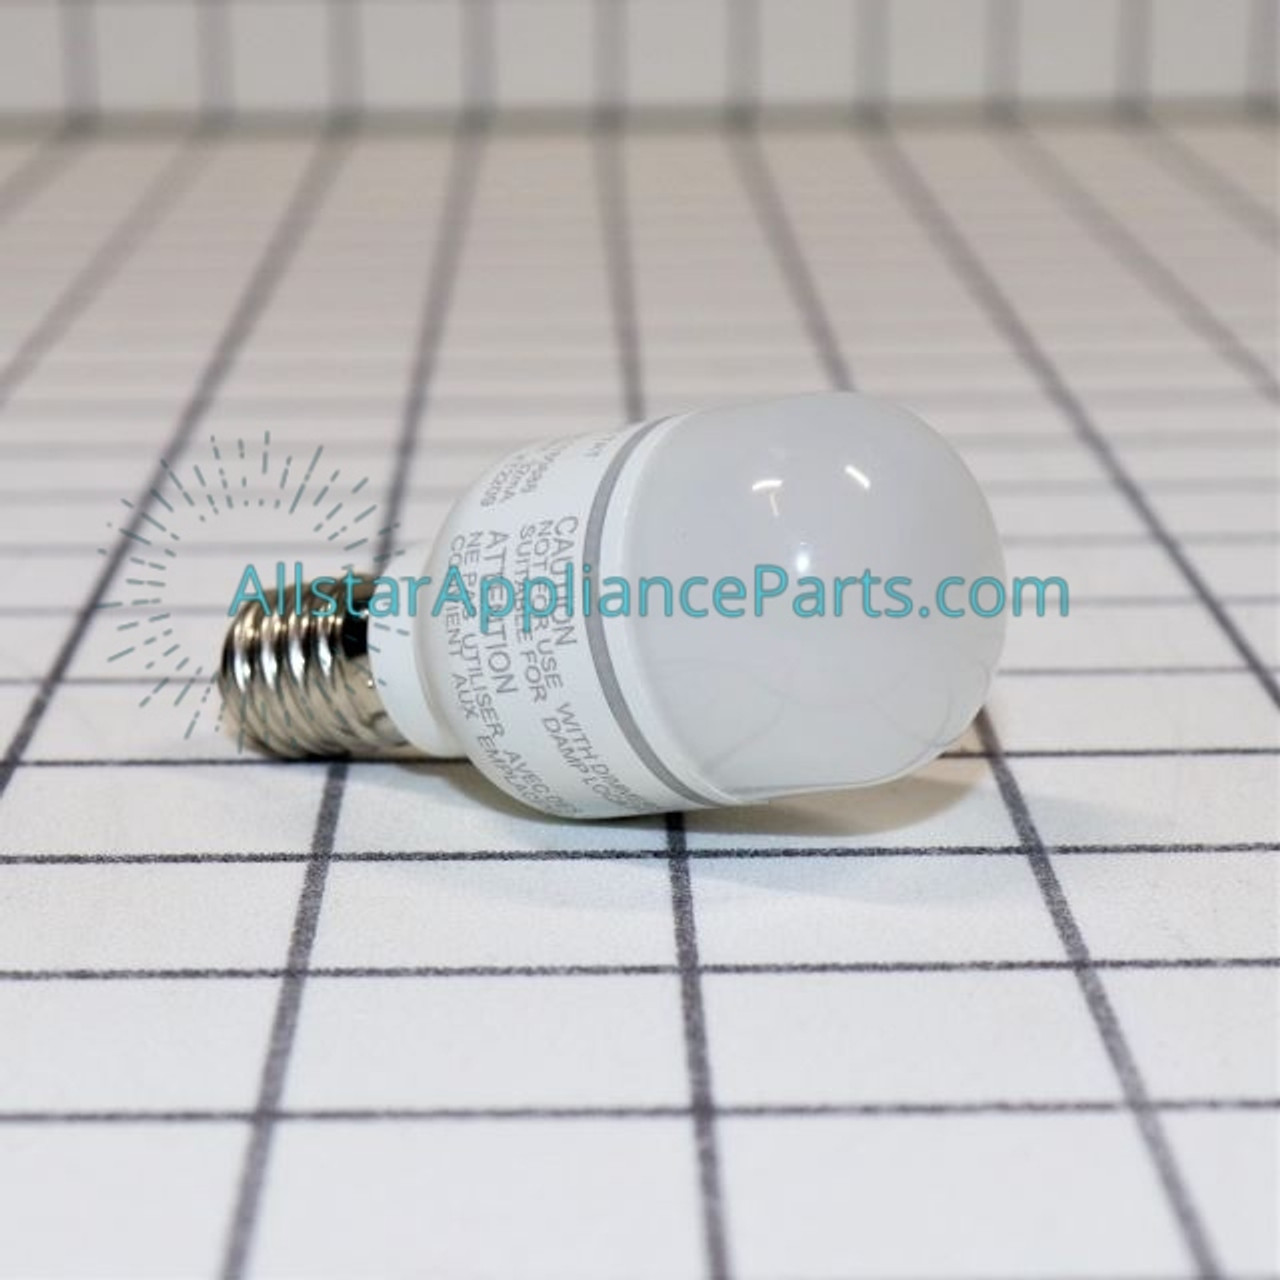 Appliance LED Light Bulb 4396822